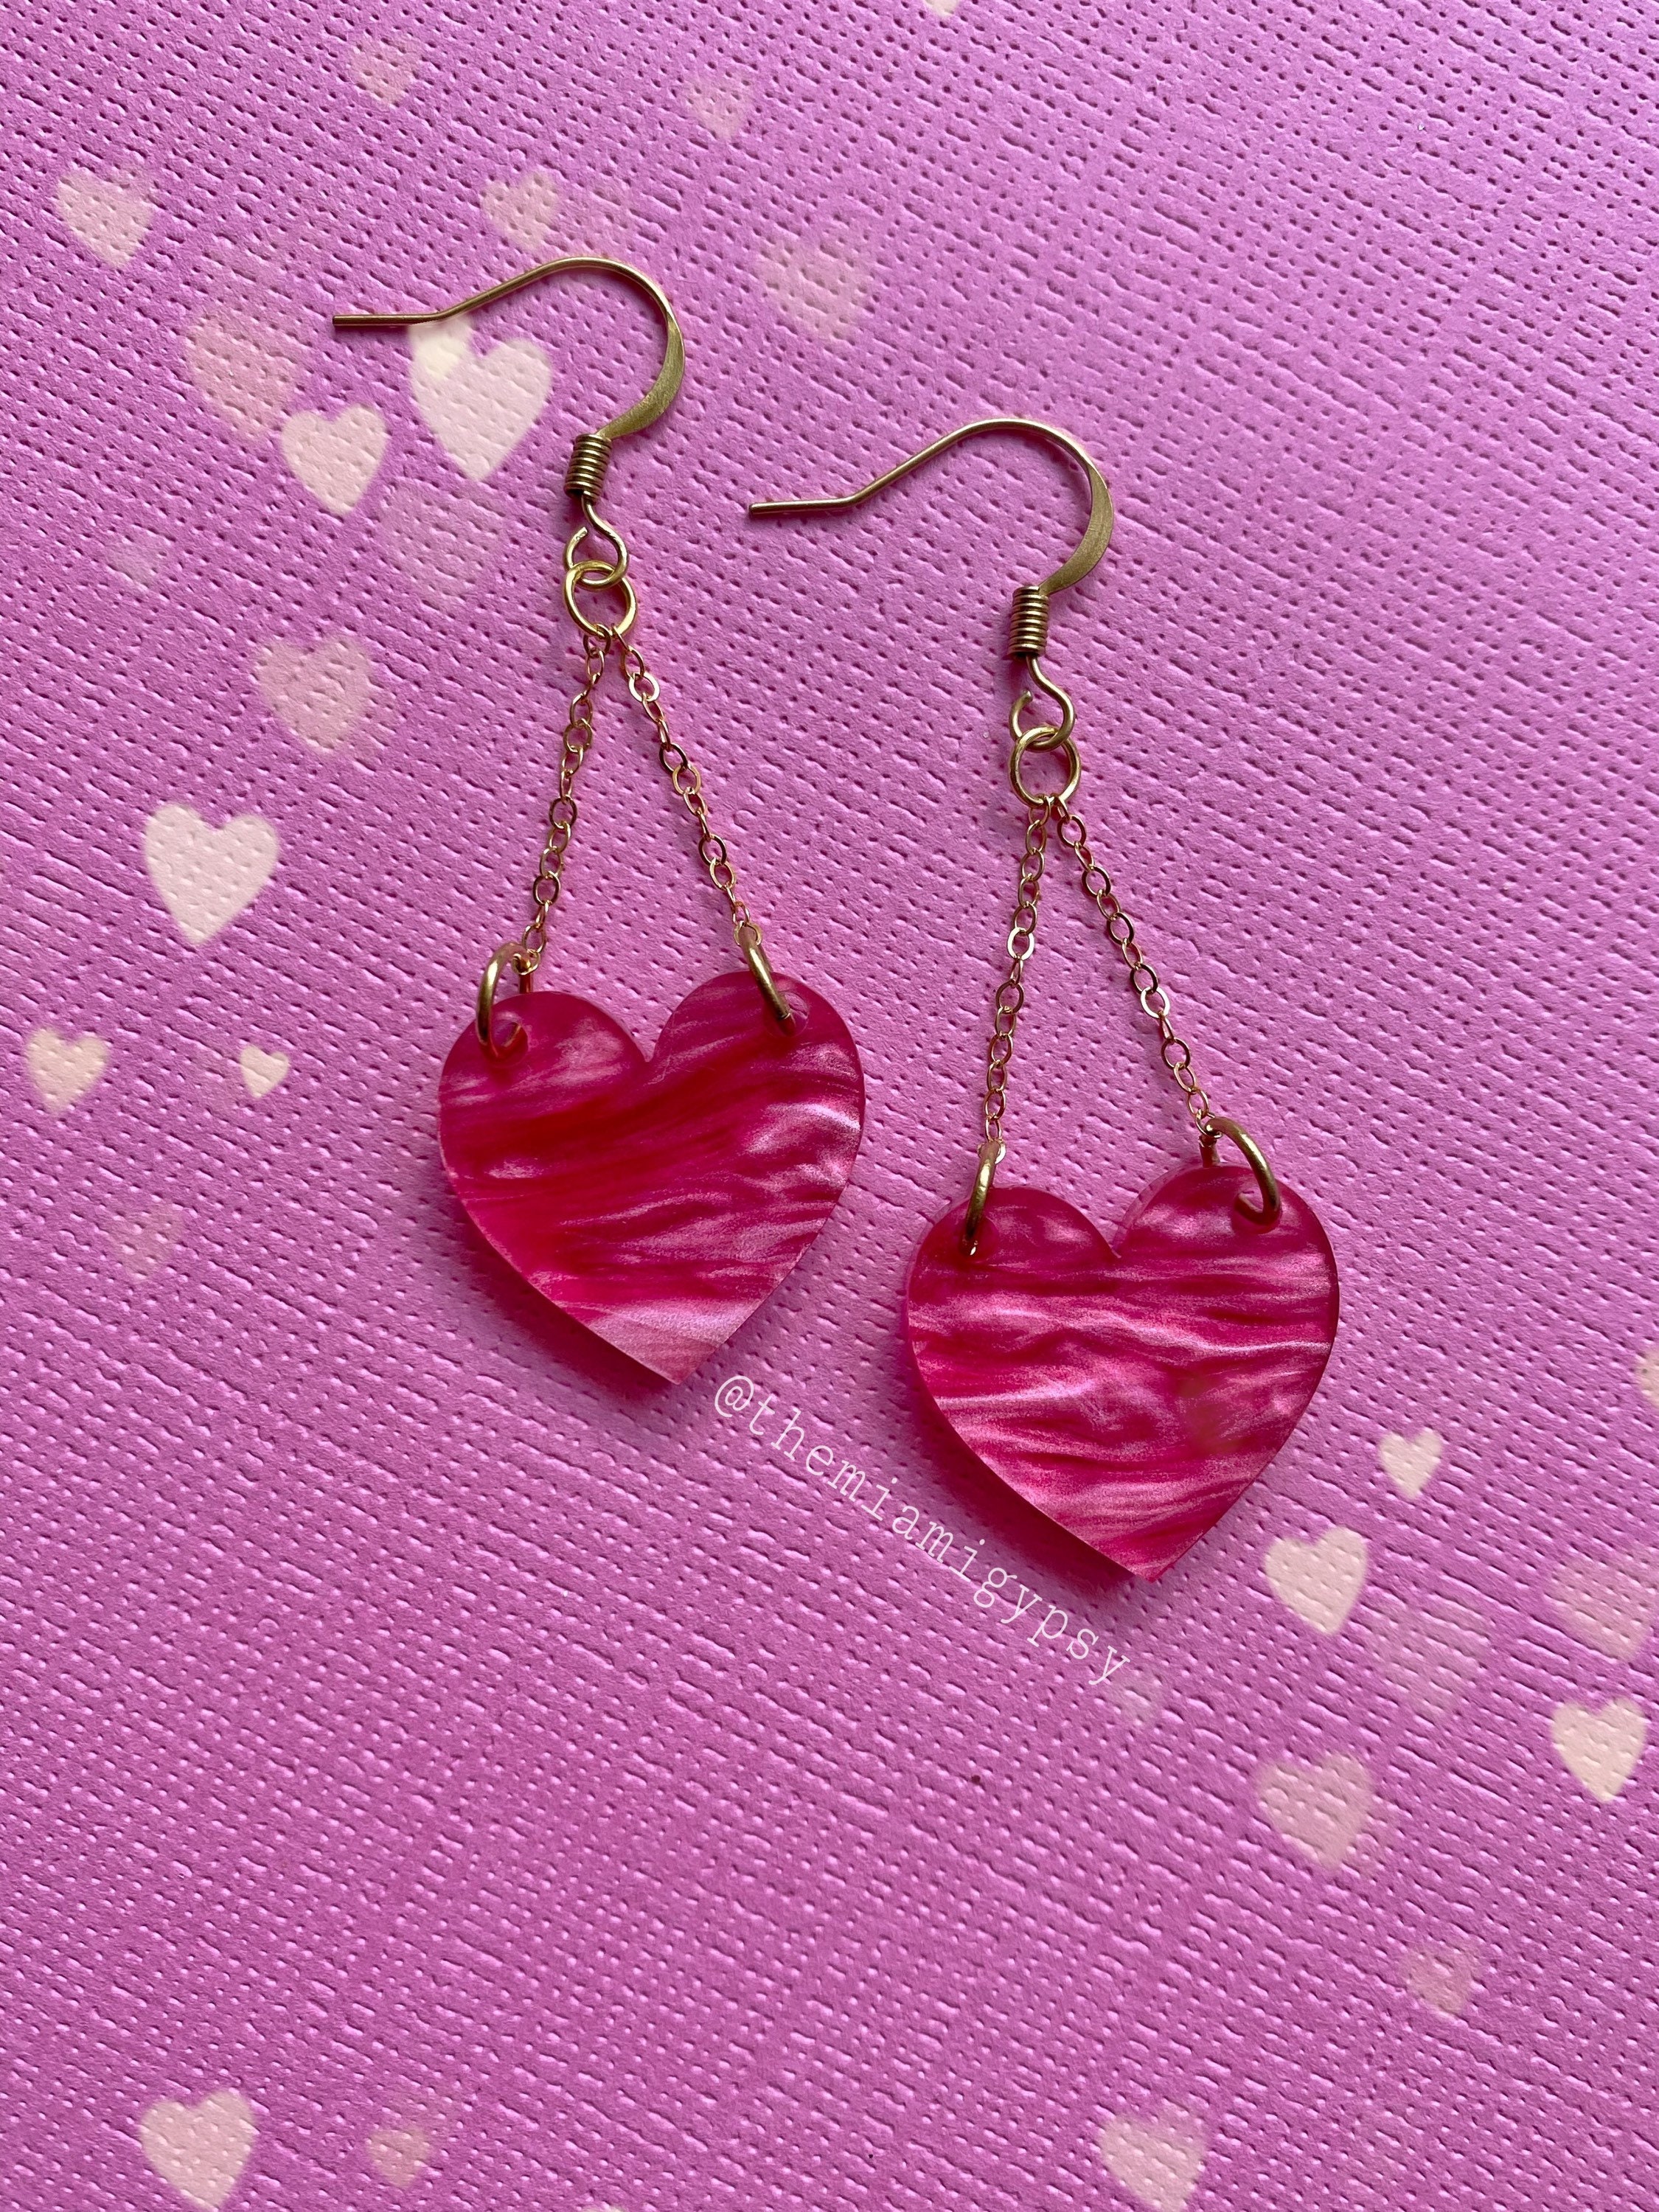 Dangle Heart Earrings Acrylic Earrings Heart Jewelry | Etsy